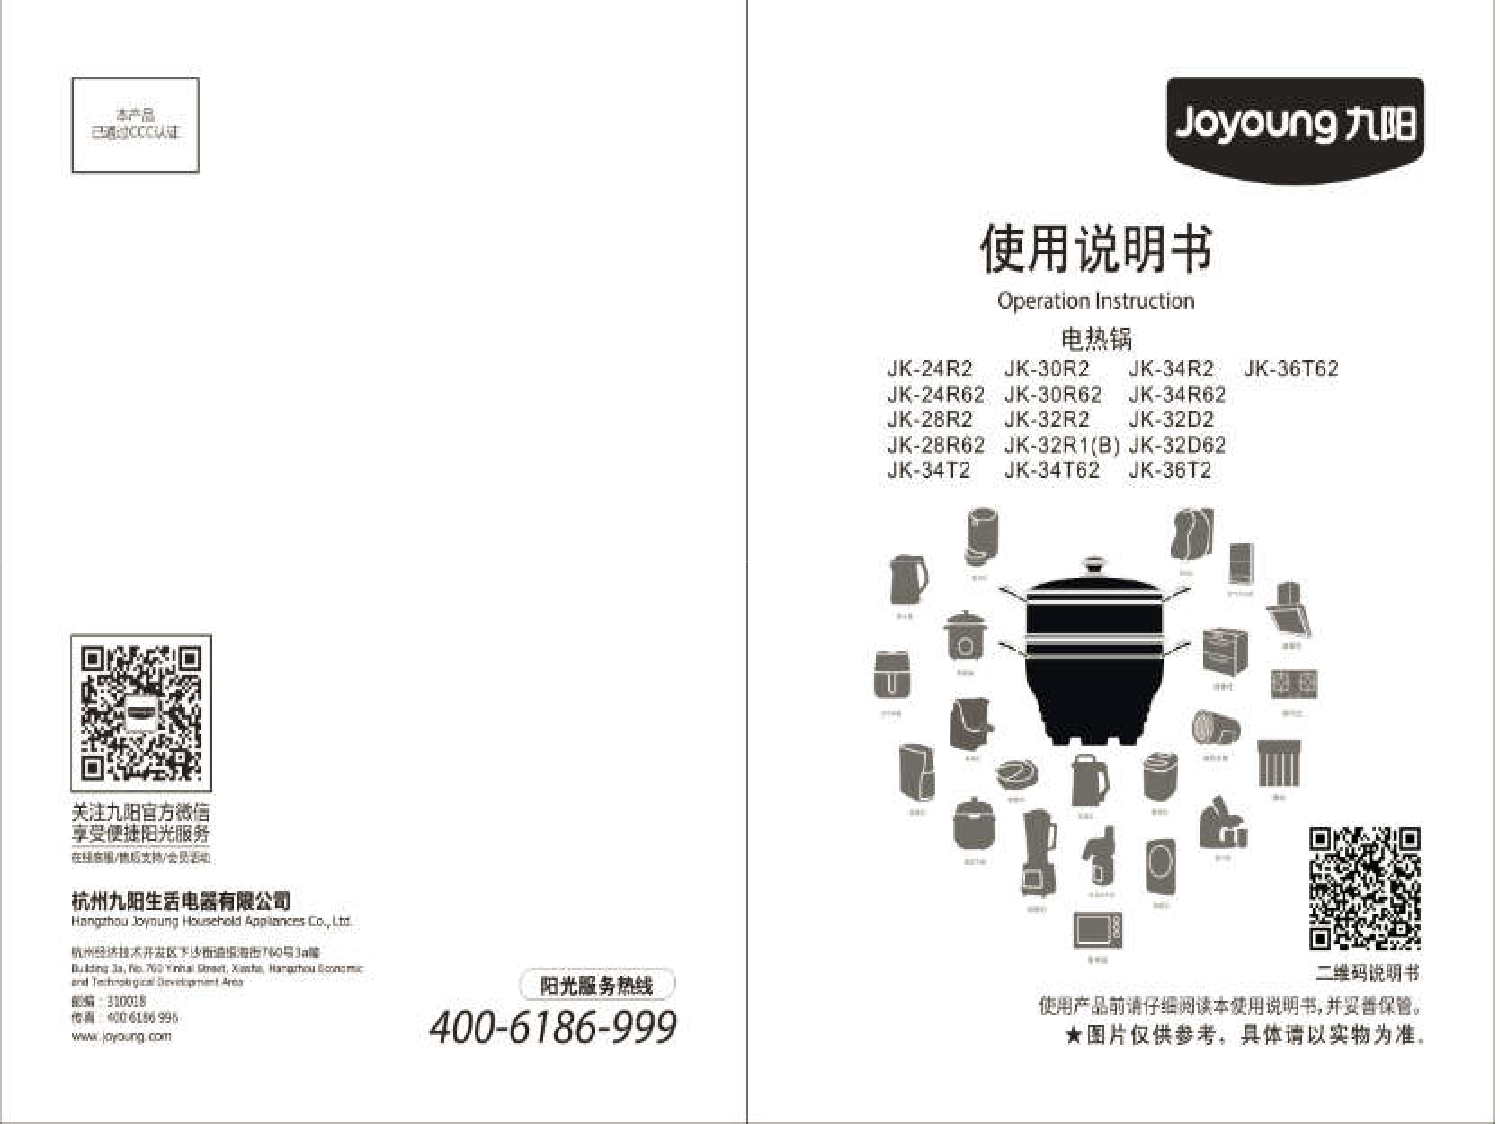 九阳 Joyyoung JK-24R2, JK-30R62, JK-32R1(B) 使用说明书 封面